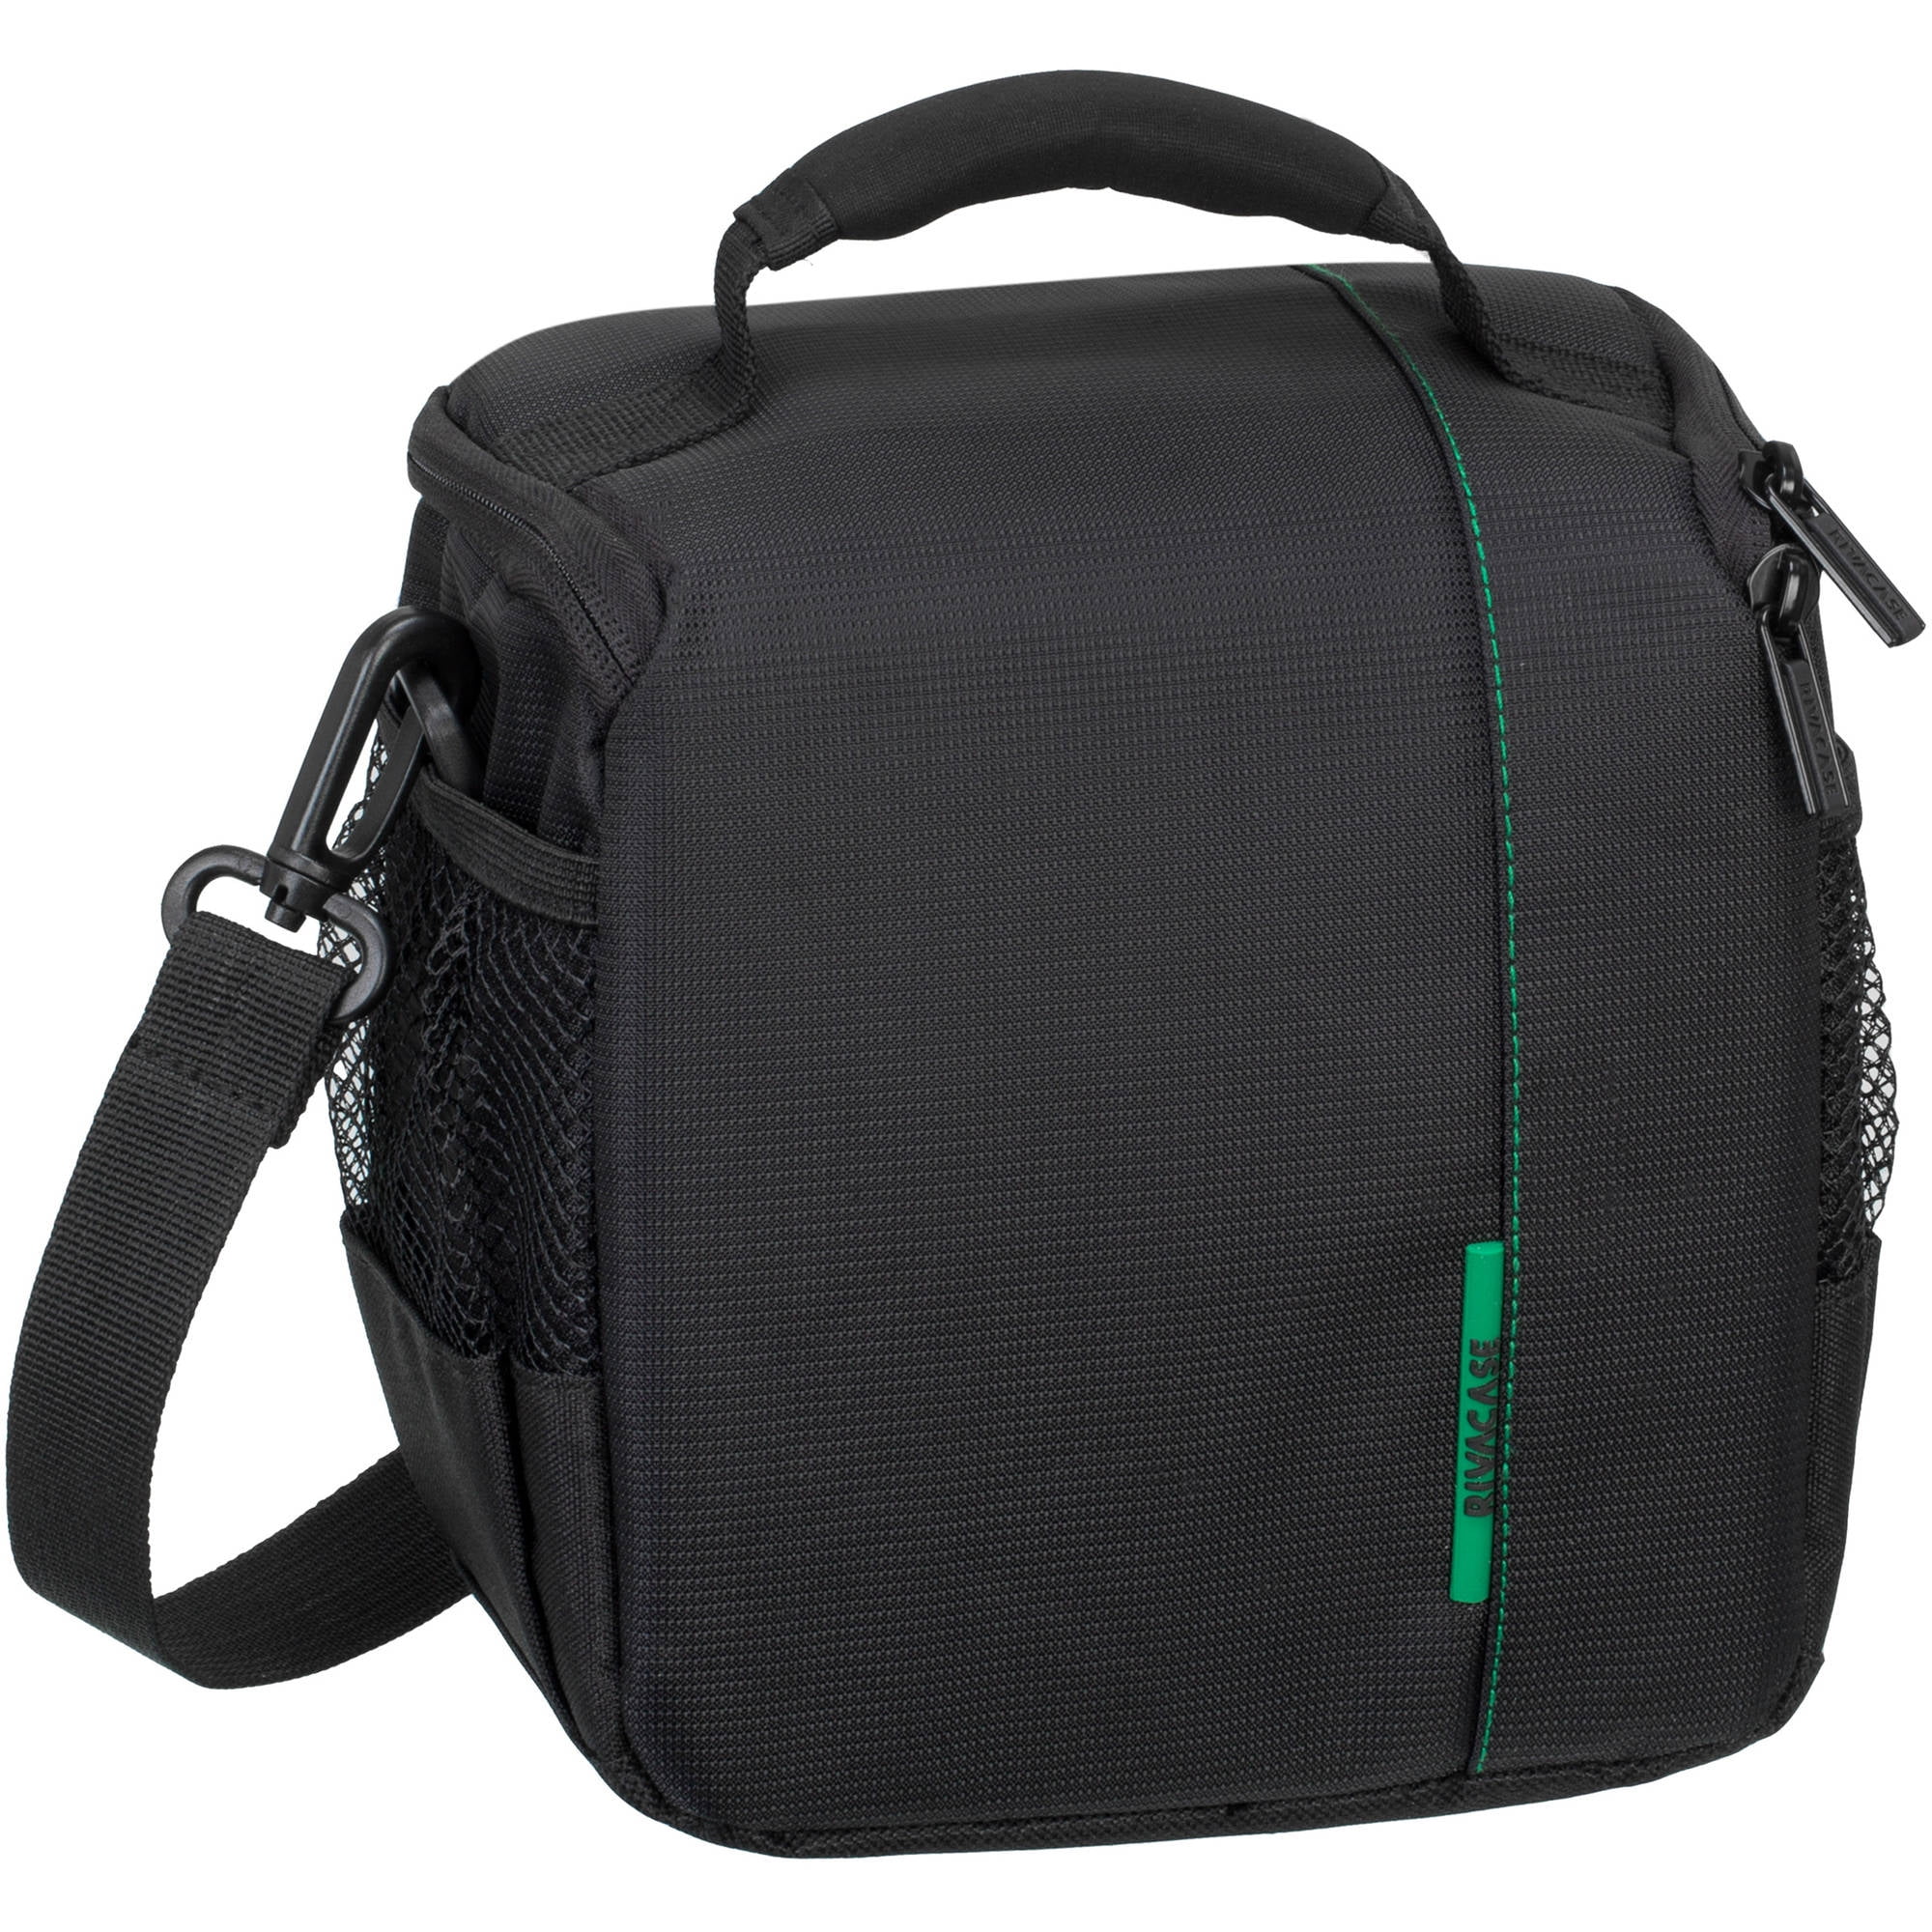 RIVACASE DSLR Shoulder Bag 7420, Black - Walmart.com